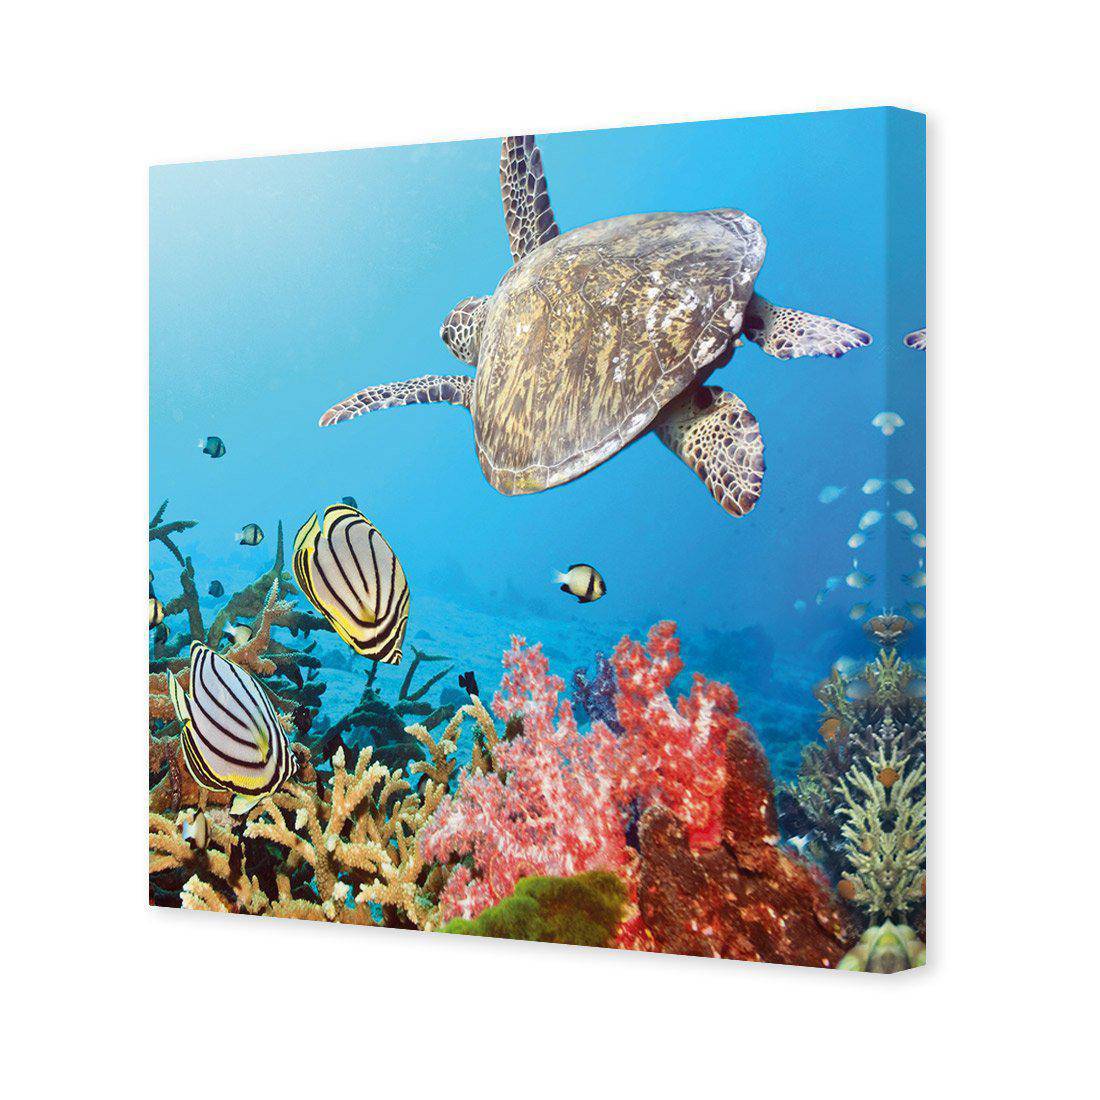 Coral Sea, Square Canvas Art-Canvas-Wall Art Designs-30x30cm-Canvas - No Frame-Wall Art Designs